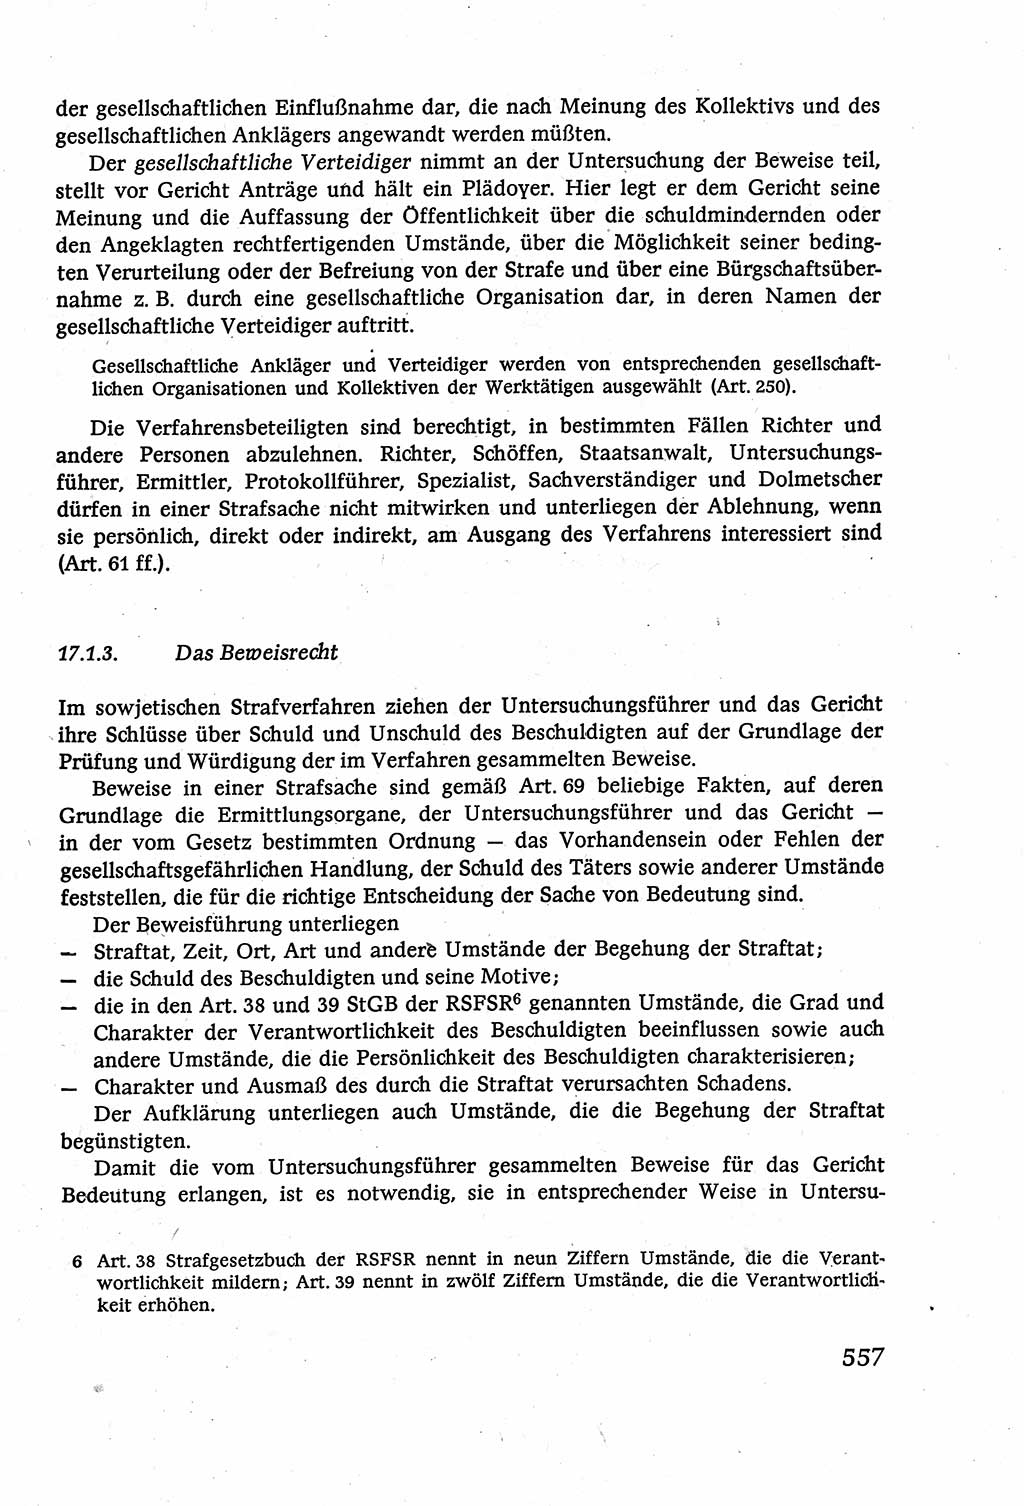 Strafverfahrensrecht [Deutsche Demokratische Republik (DDR)], Lehrbuch 1977, Seite 557 (Strafverf.-R. DDR Lb. 1977, S. 557)